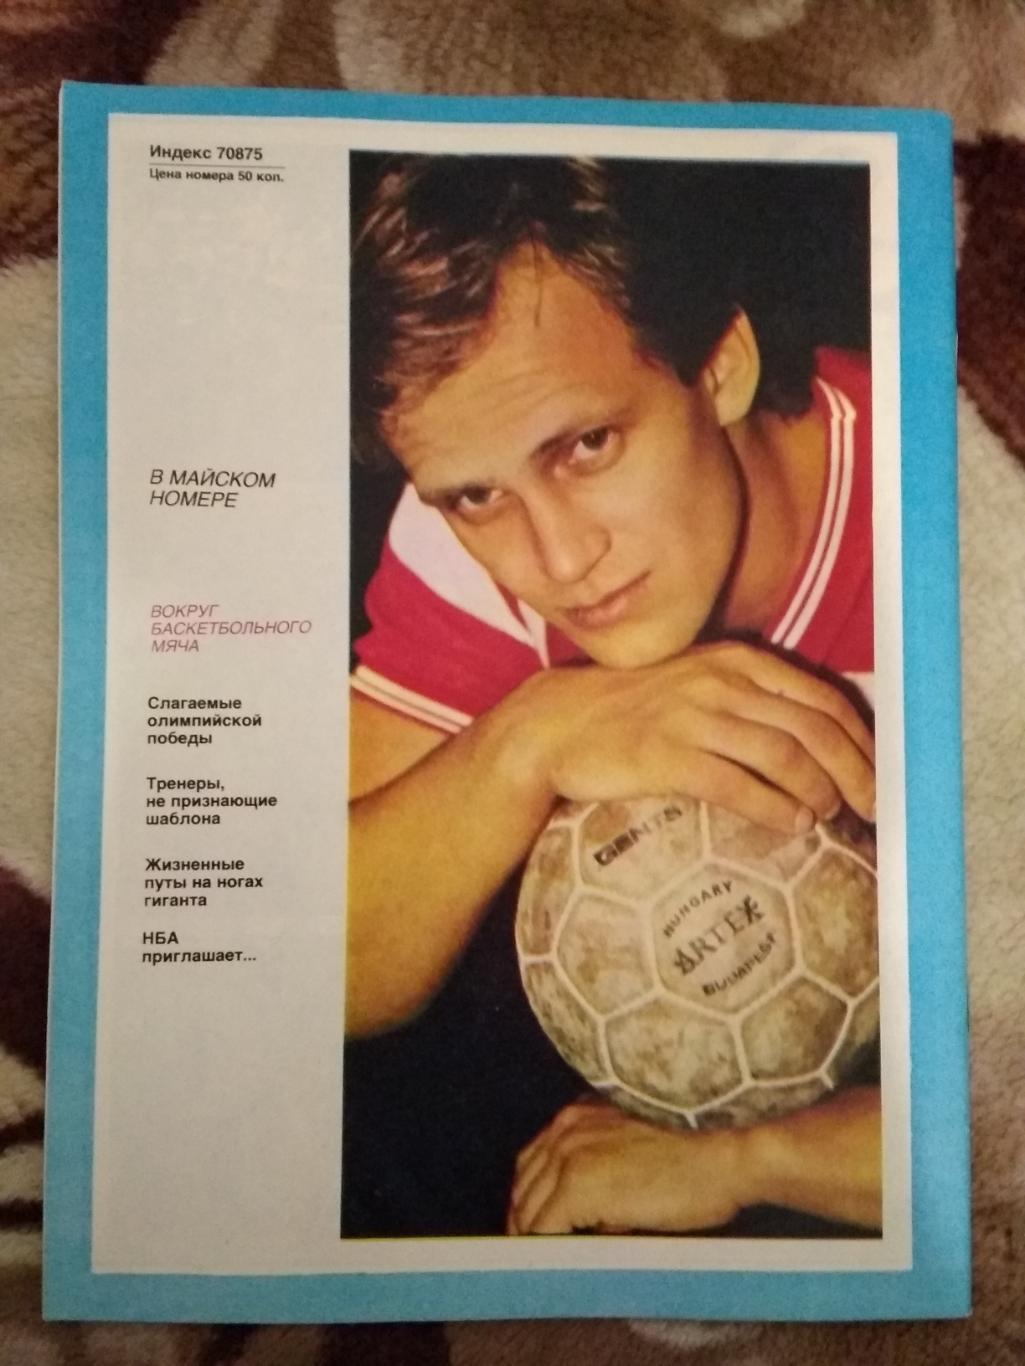 Журнал.Спортивные игры № 4 1989 г. 1